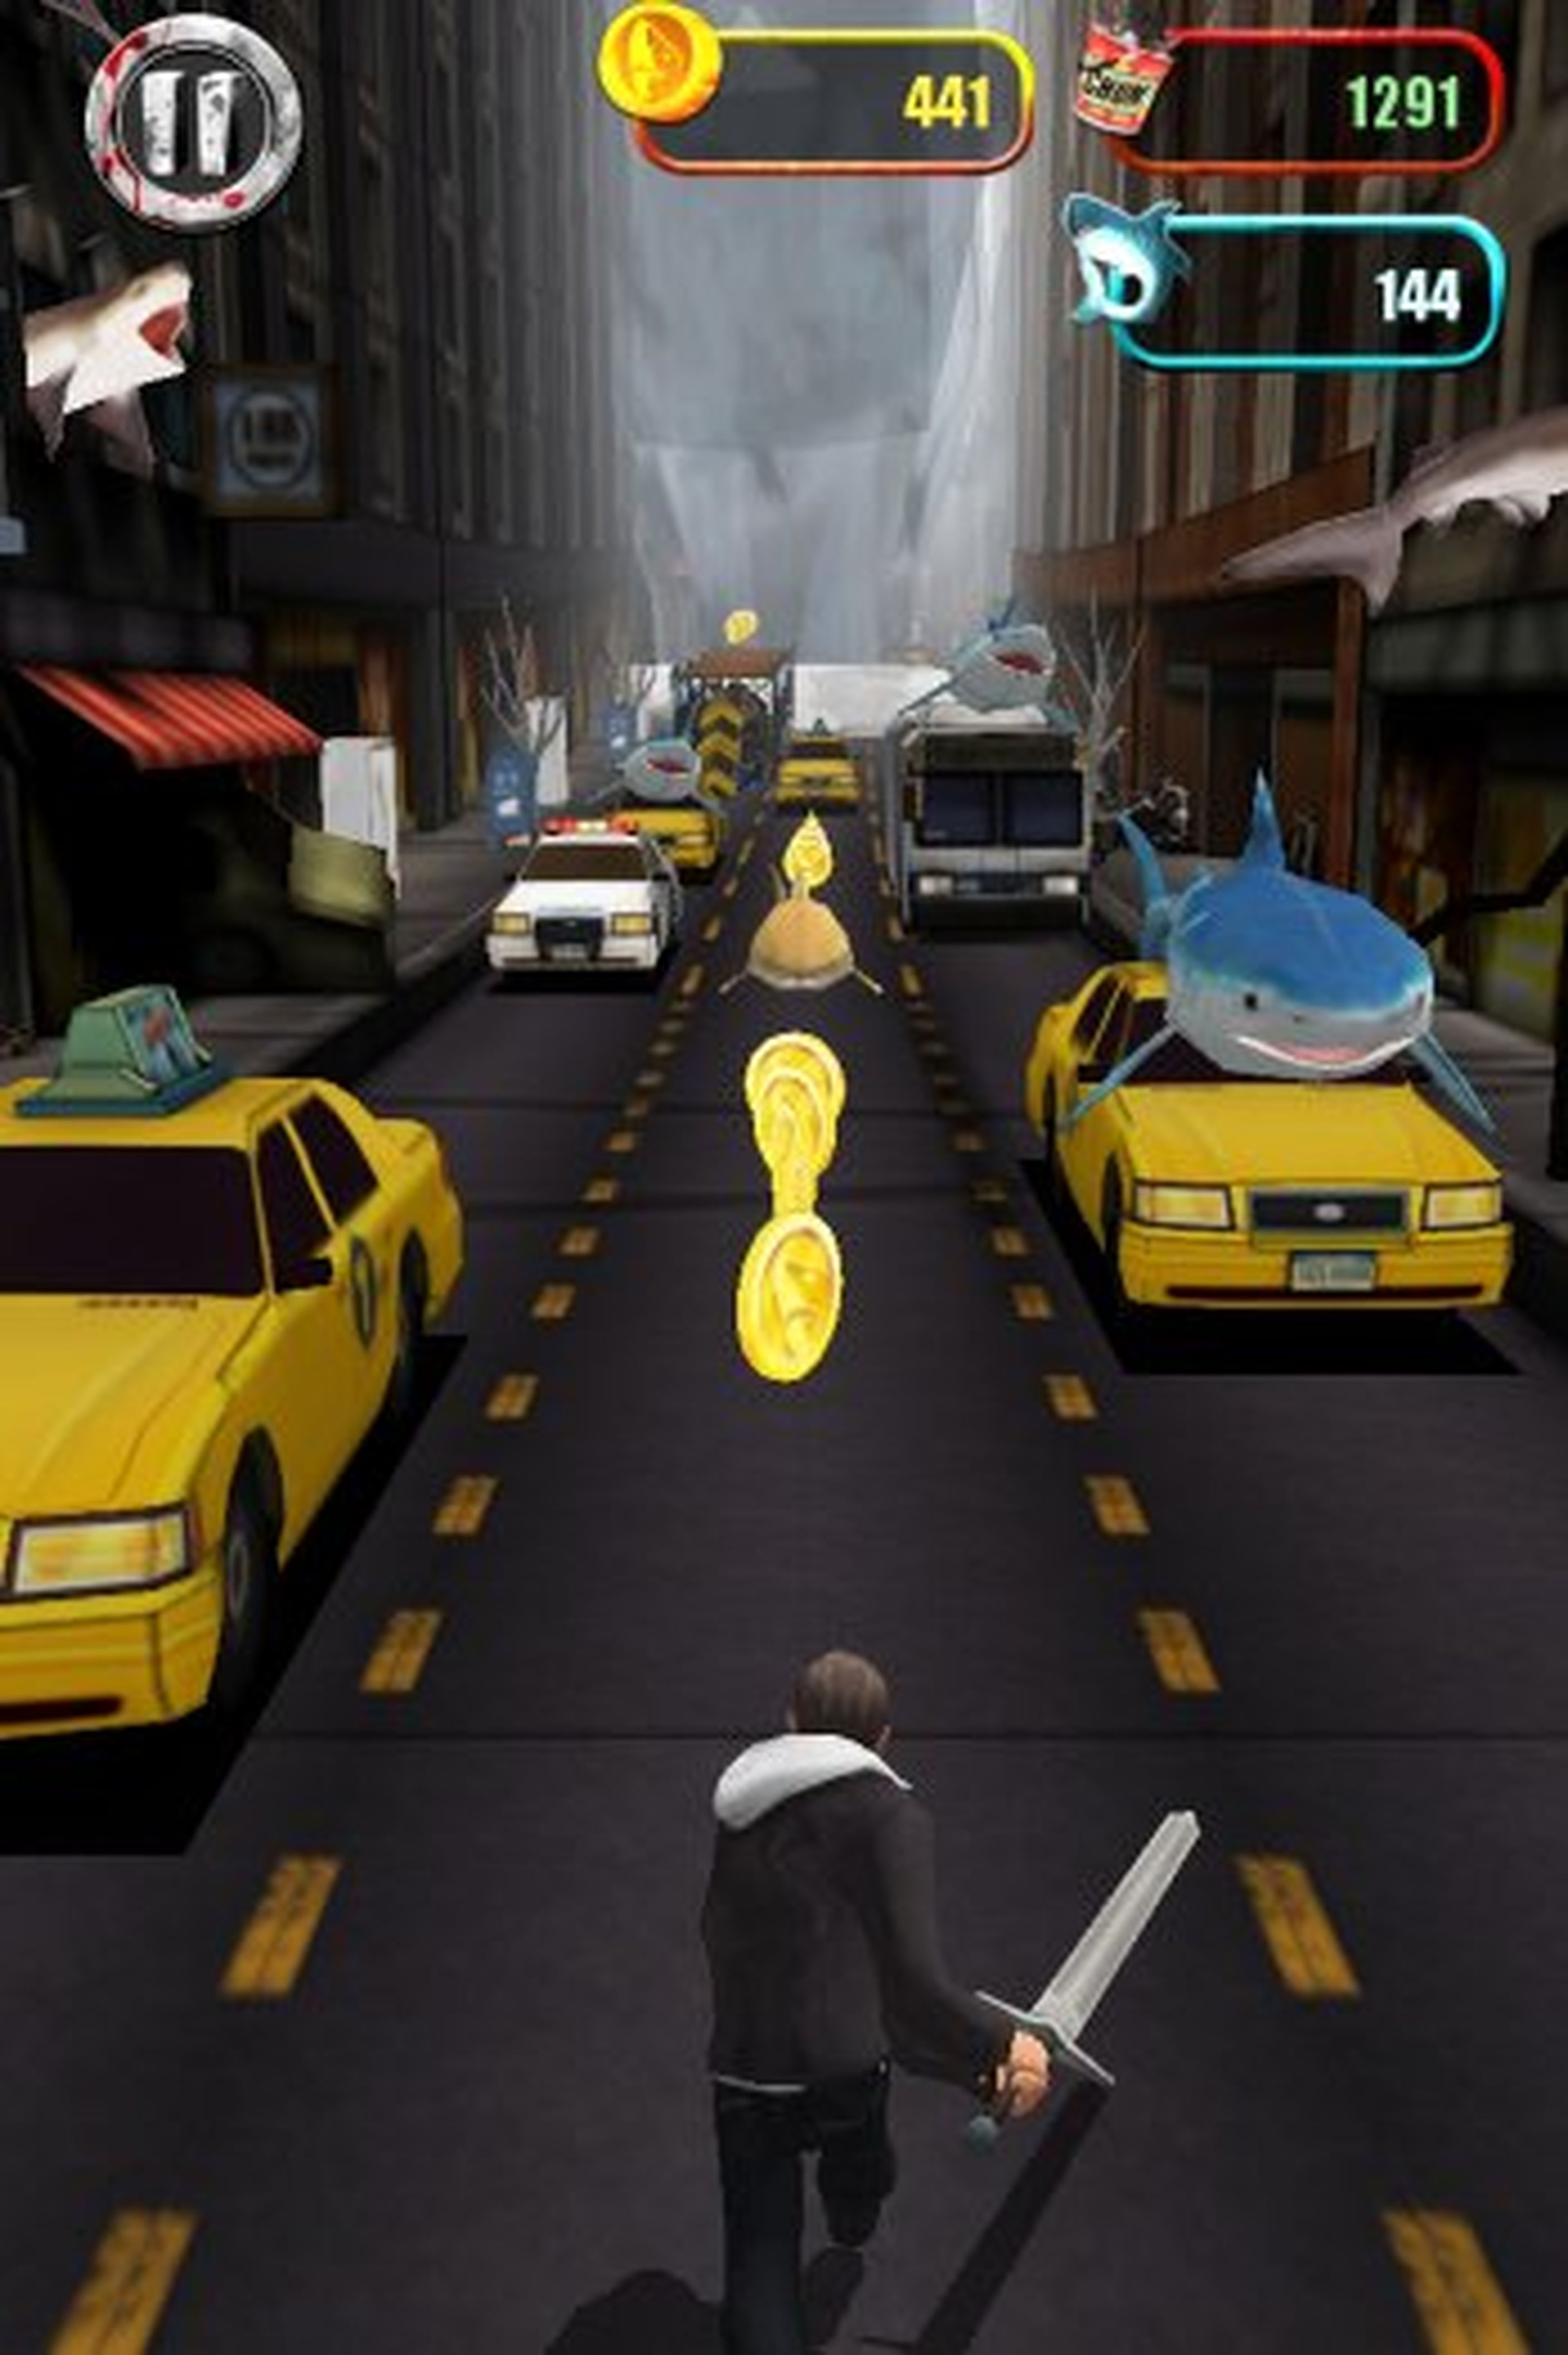 Sharknado tendrá un videojuego a modo de spin-off